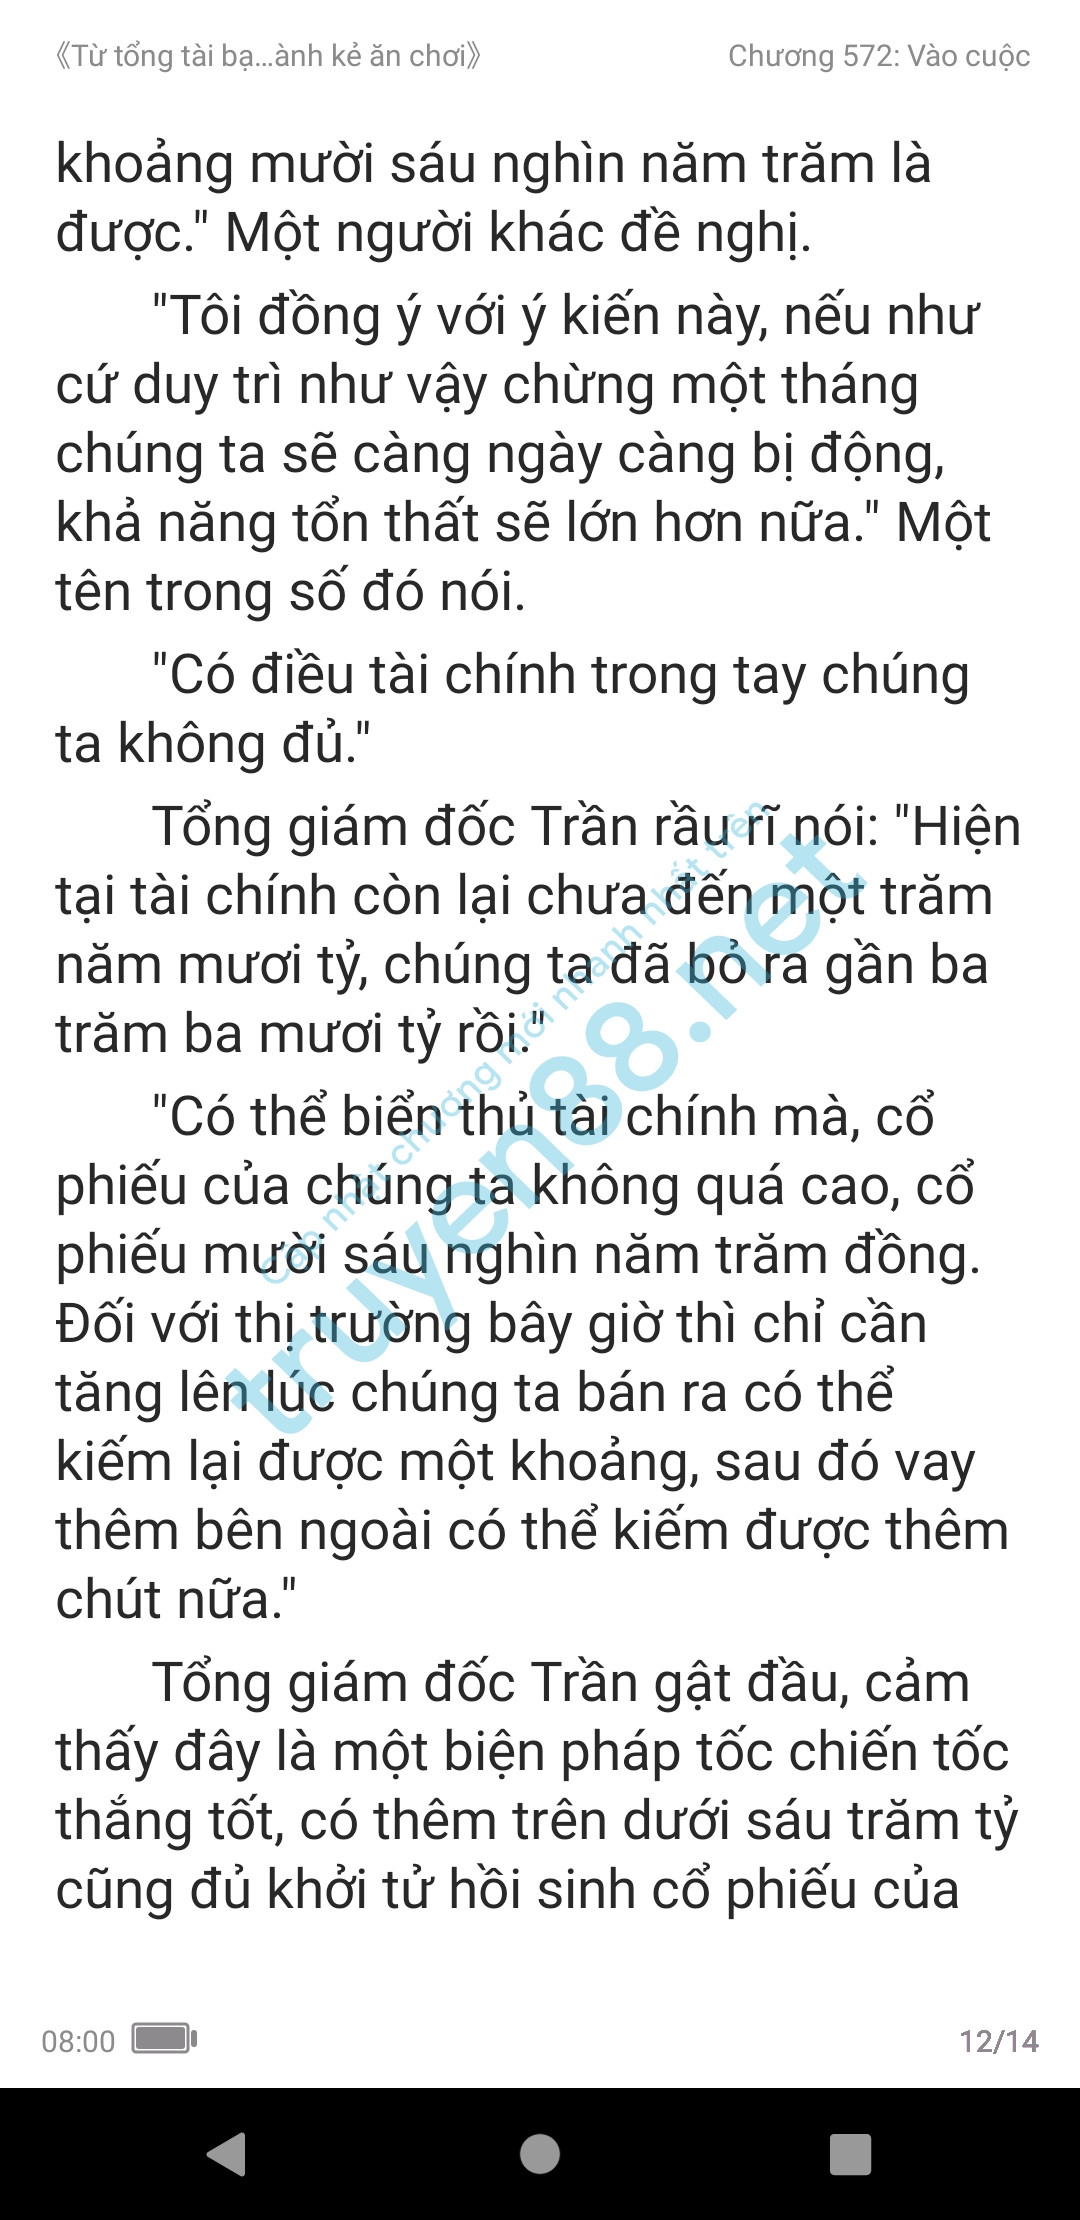 ke-an-choi-bien-tong-tai-572-0